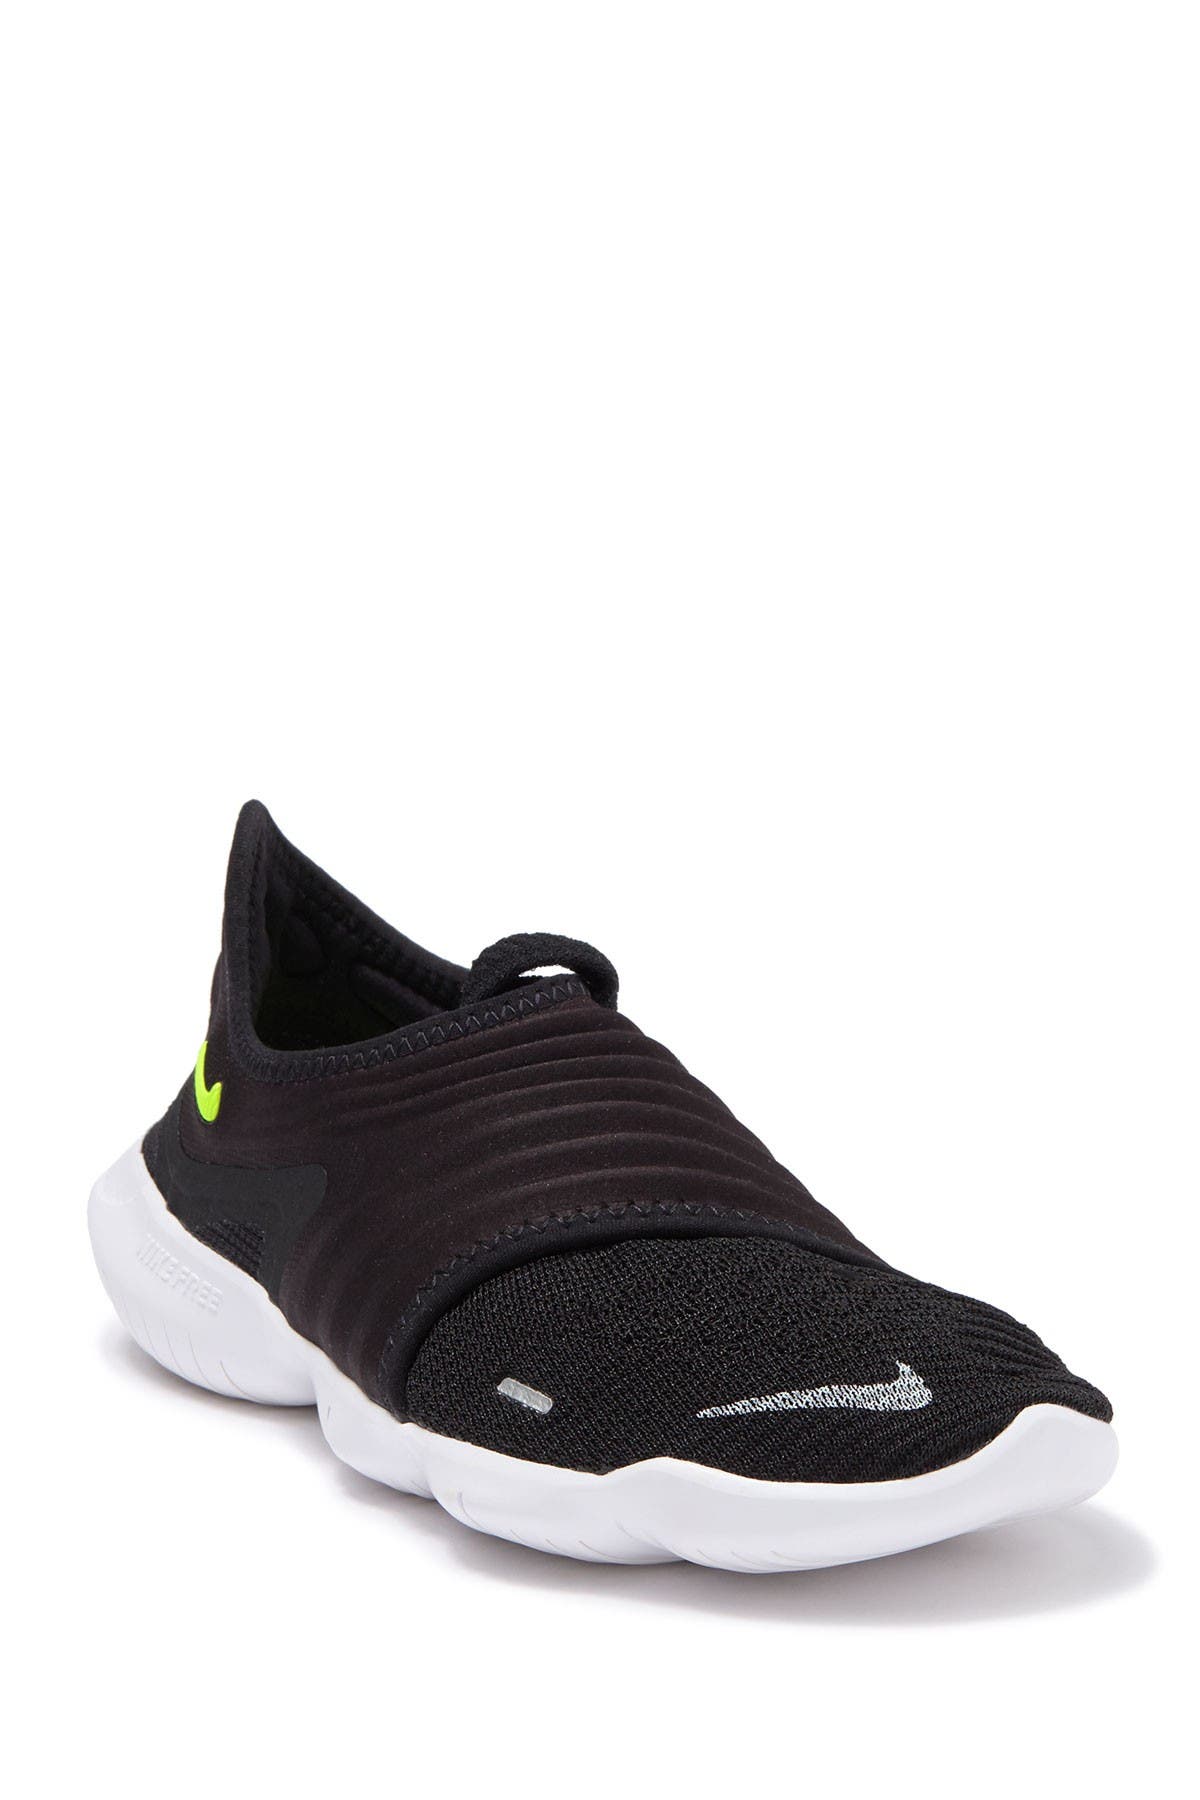 Nike | Free RN Flyknit 3.0 Sneaker 